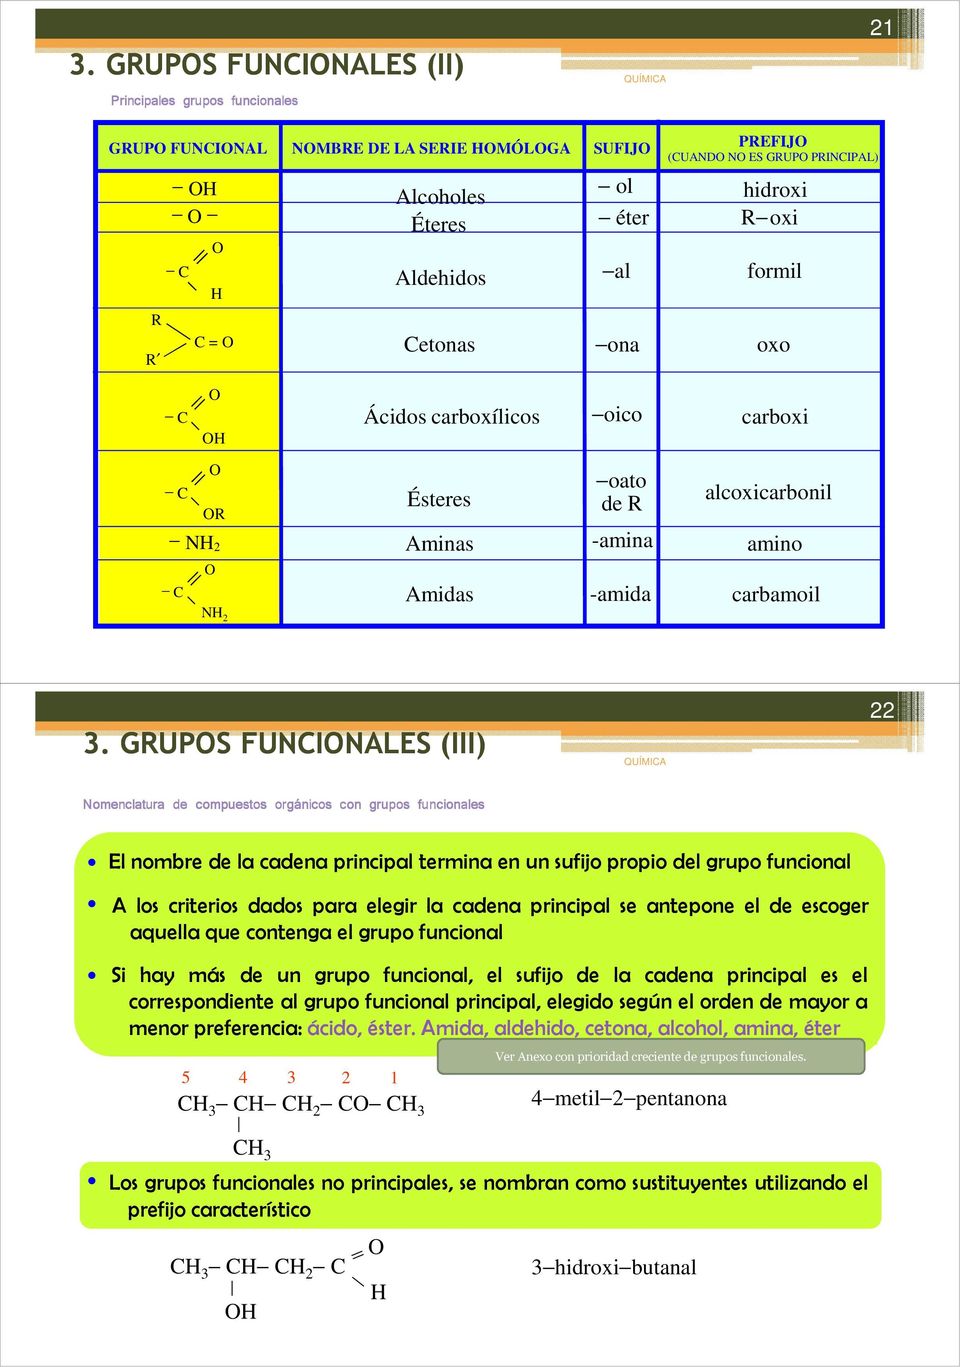 GRUPS FUNINALES (III) 22 Nomenclatura de compuestos orgánicos con grupos funcionales El nombre de la cadena principal termina en un sufijo propio del grupo funcional A los criterios dados para elegir